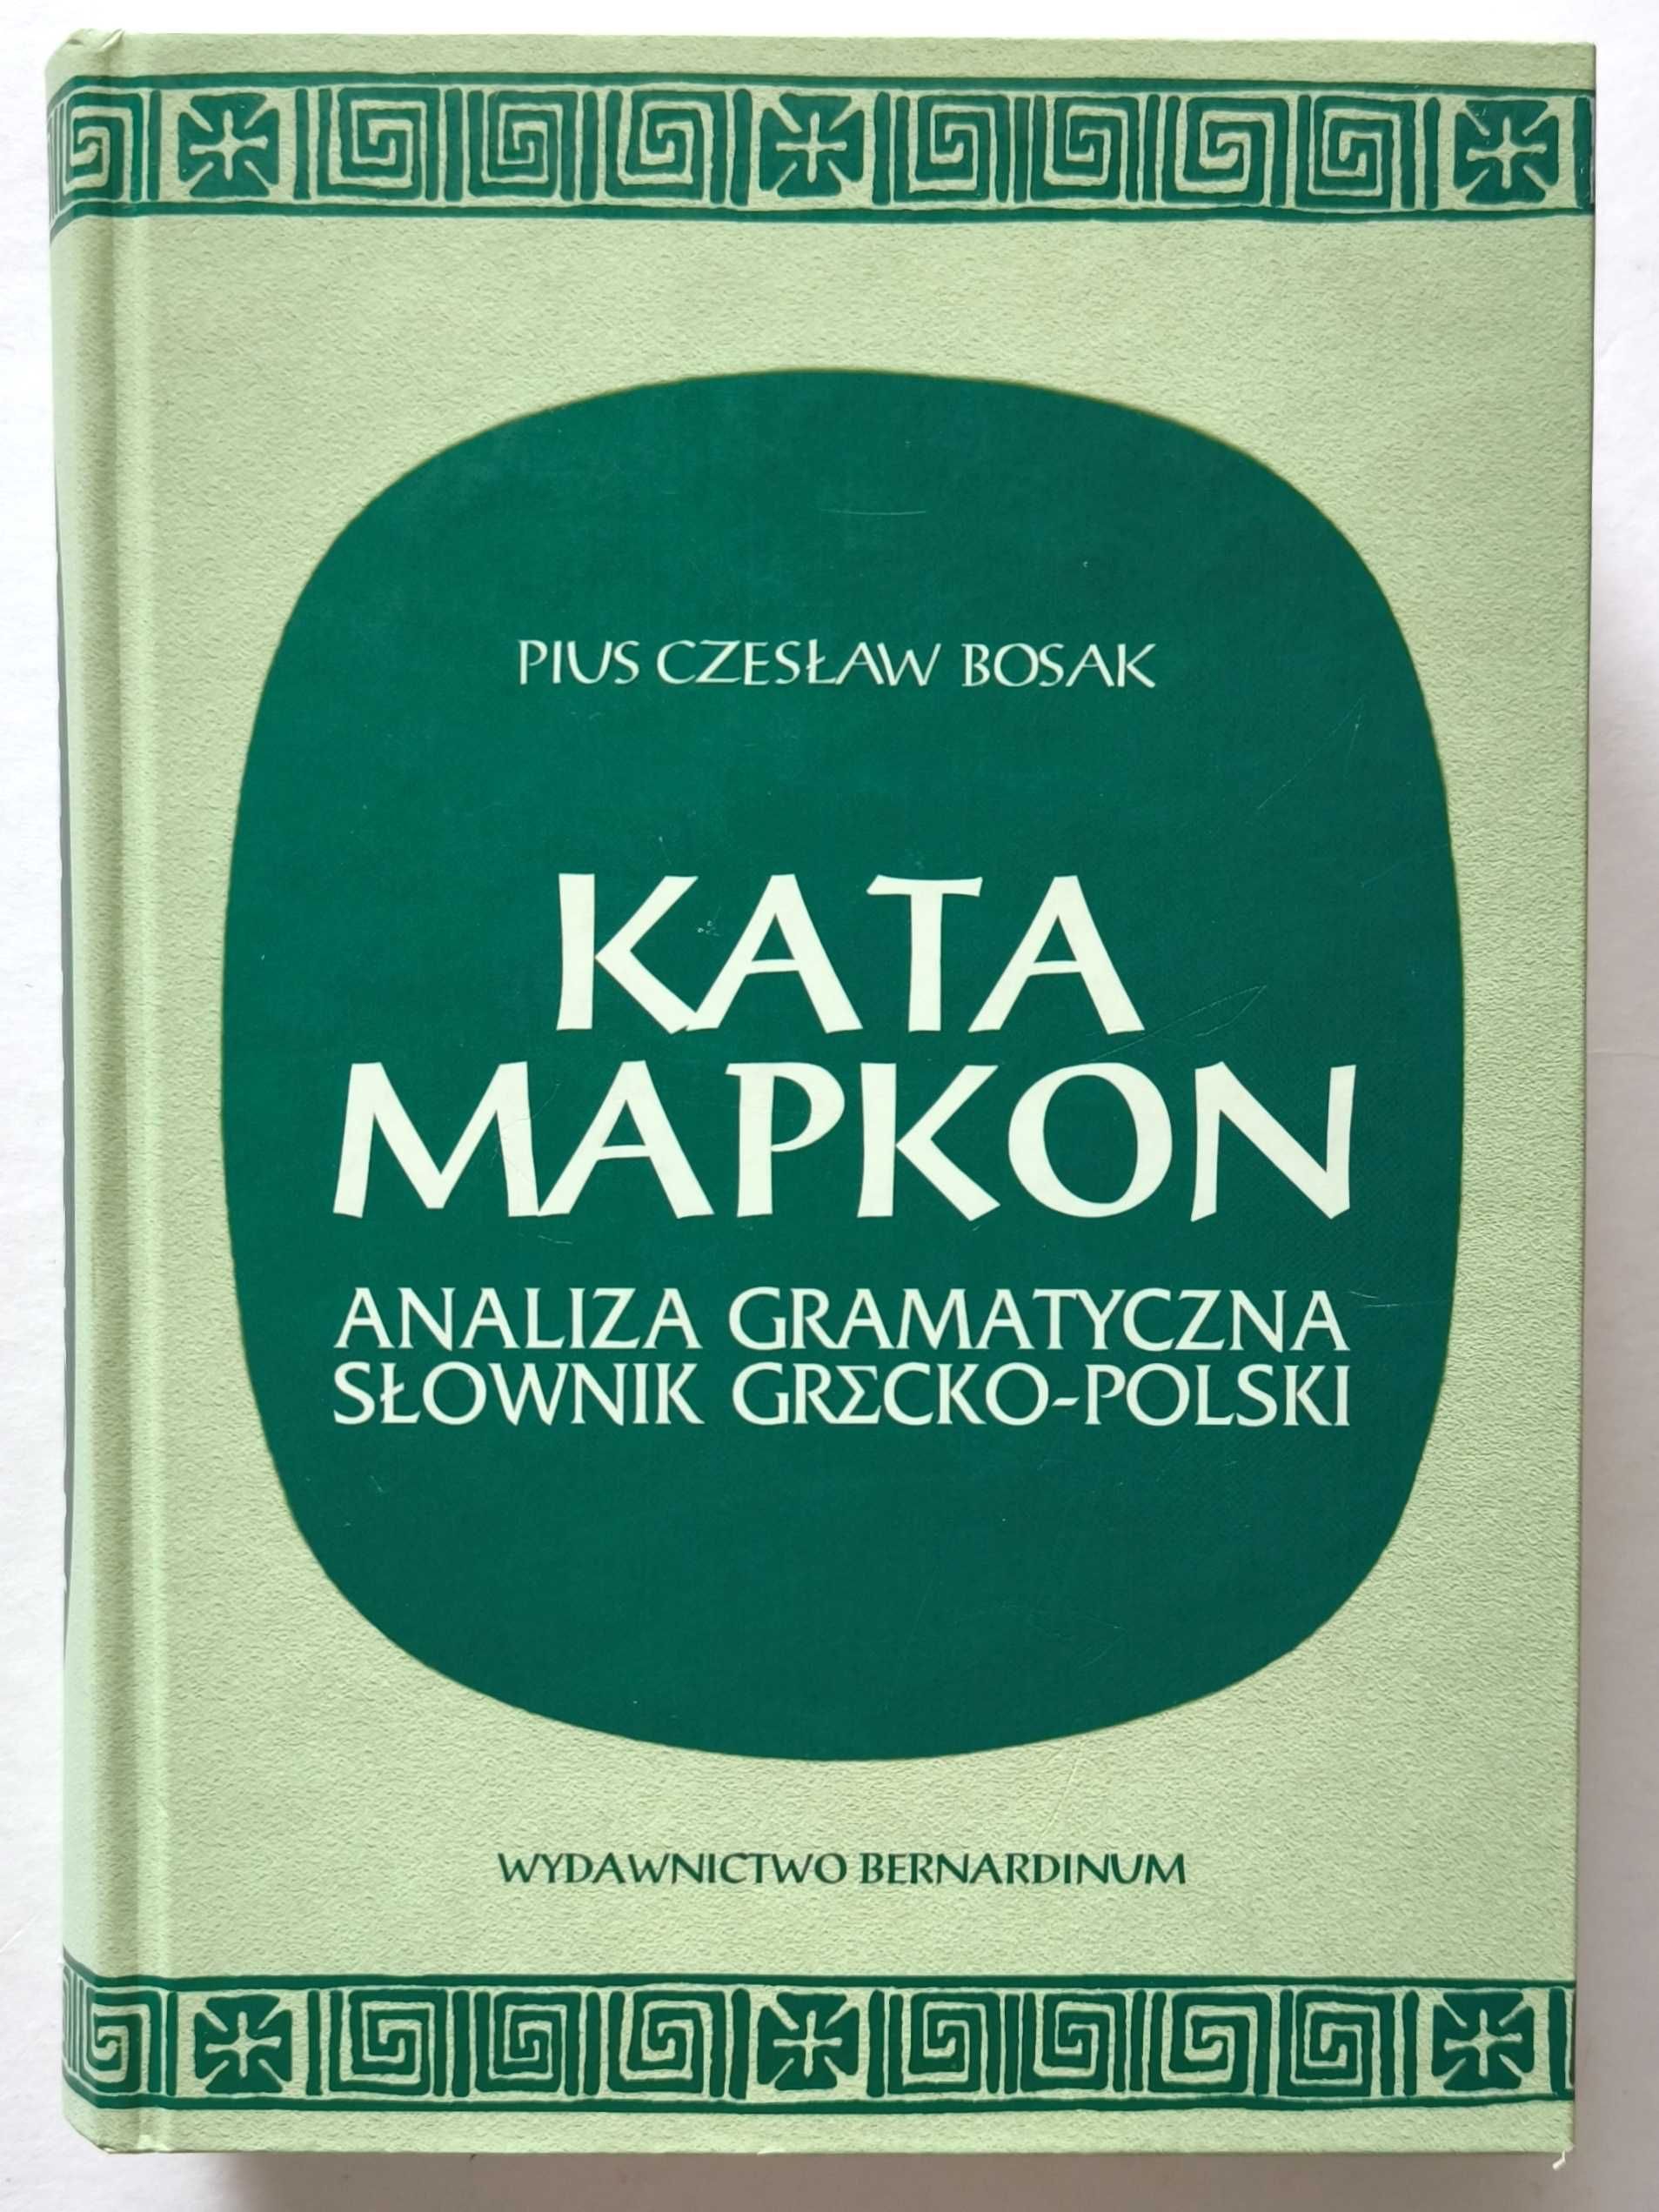 KATA MAOOAION + KATA MAPKON, Analiza gramatyczna Słownik grecko-polski